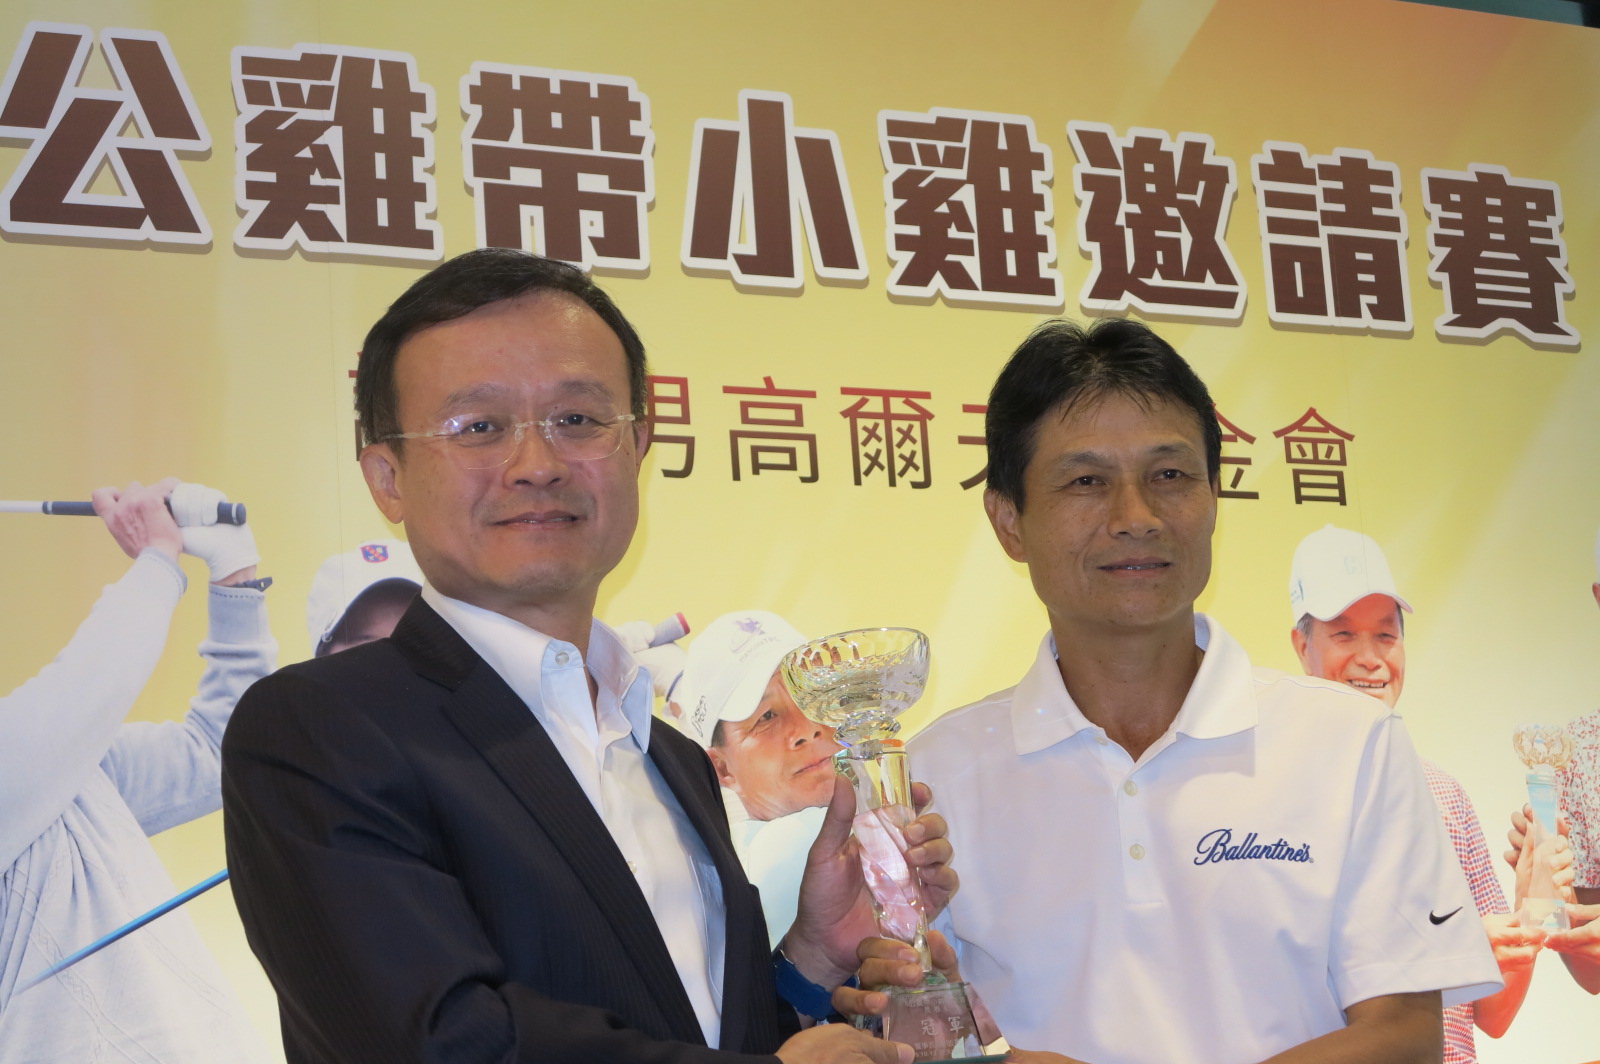 大屯球場名譽董事長麥勝剛頒發冠軍杯給杜錦豐(右)。圖/高爾夫文摘